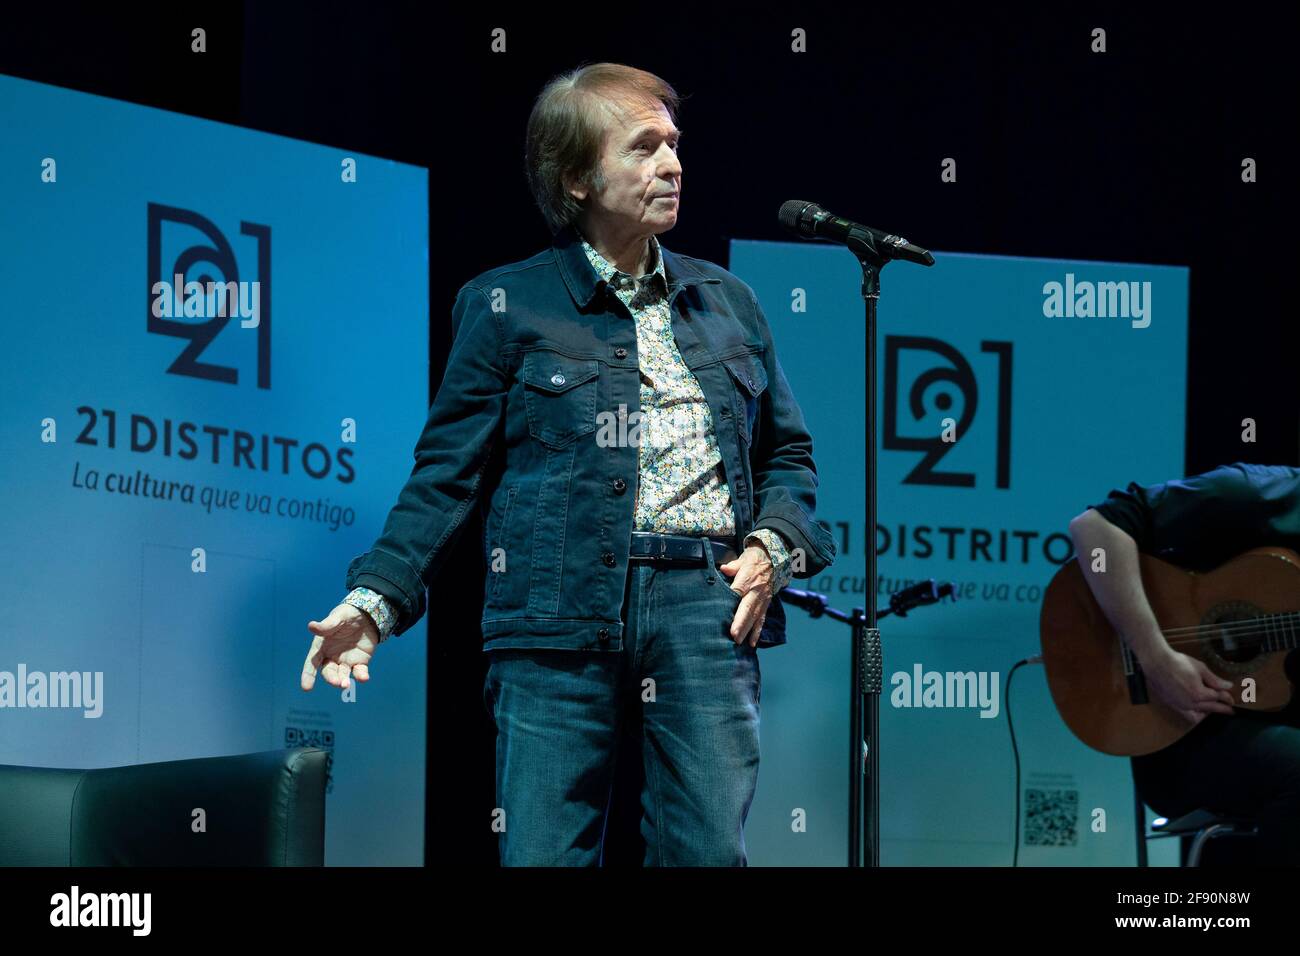 El cantante español Miguel Rafael Martos aka Raphael actúa en directo en el escenario durante una reunión con sus fans mientras celebra 60 años de carrera en Matadero en Madrid. Foto de stock